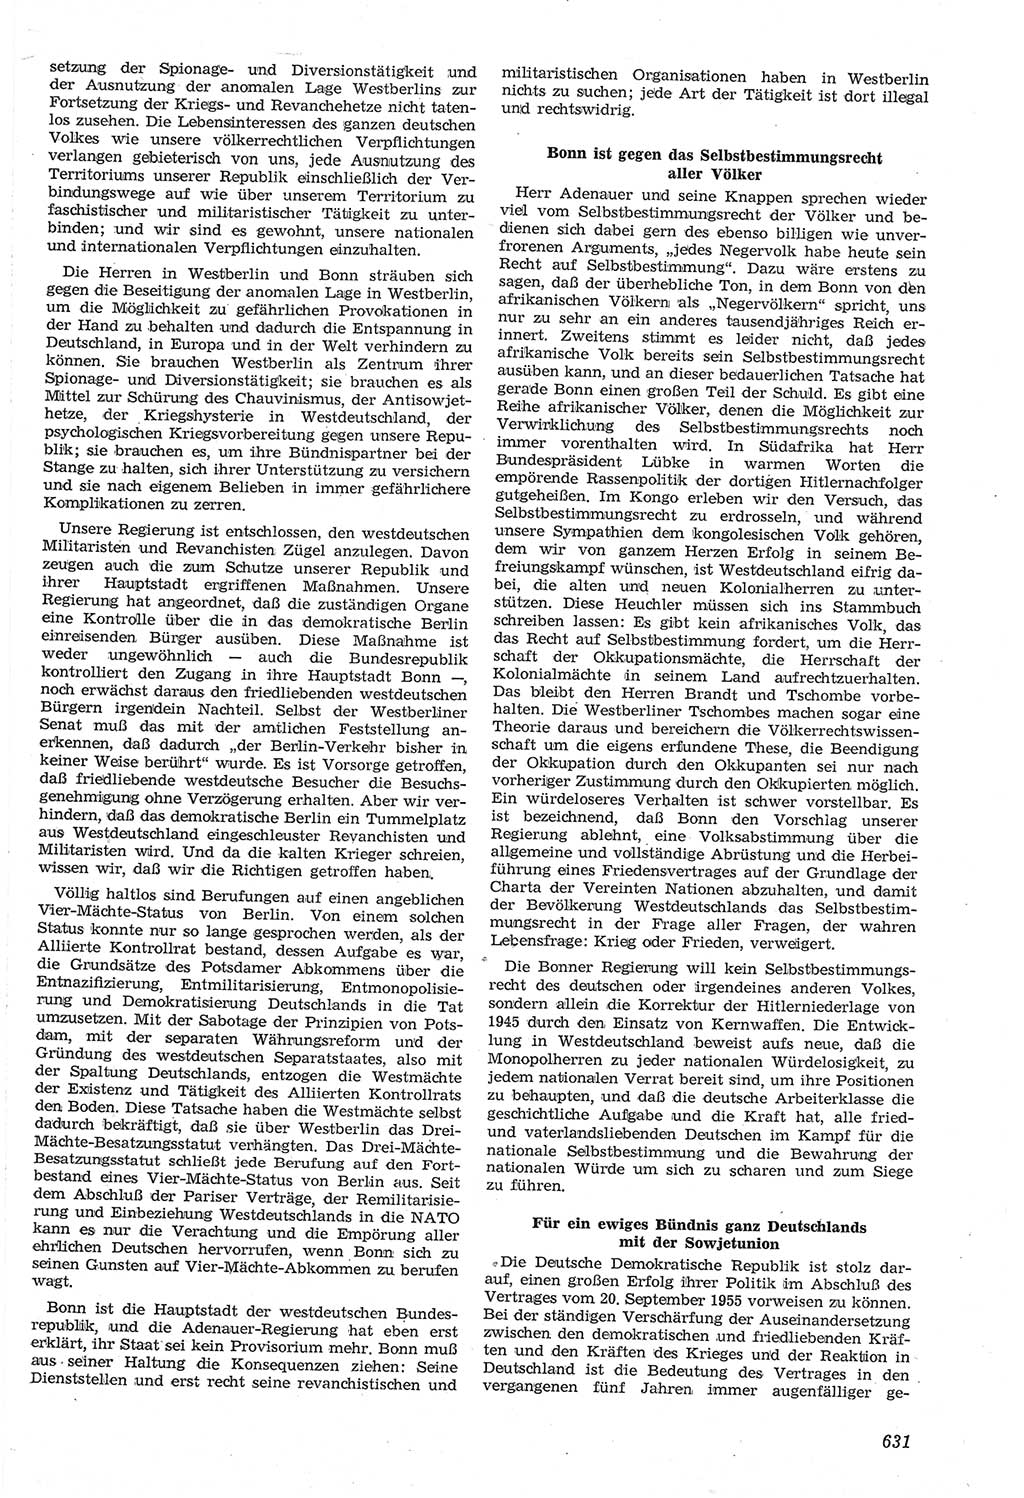 Neue Justiz (NJ), Zeitschrift für Recht und Rechtswissenschaft [Deutsche Demokratische Republik (DDR)], 14. Jahrgang 1960, Seite 631 (NJ DDR 1960, S. 631)